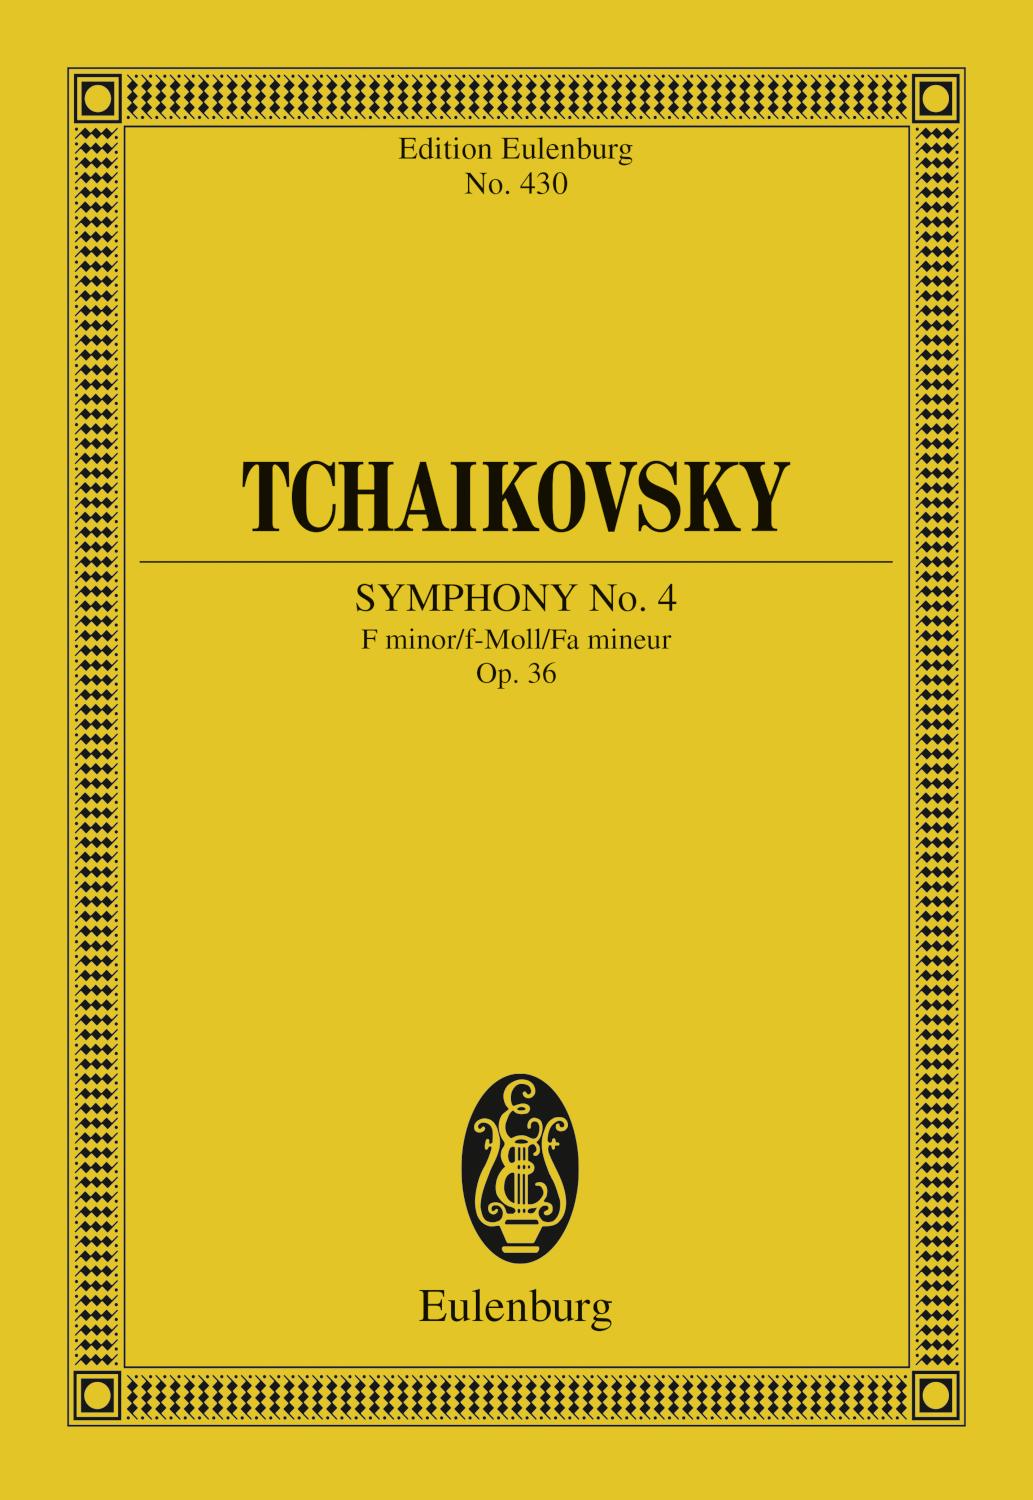 Symphony No. 4 F minor Op. 36